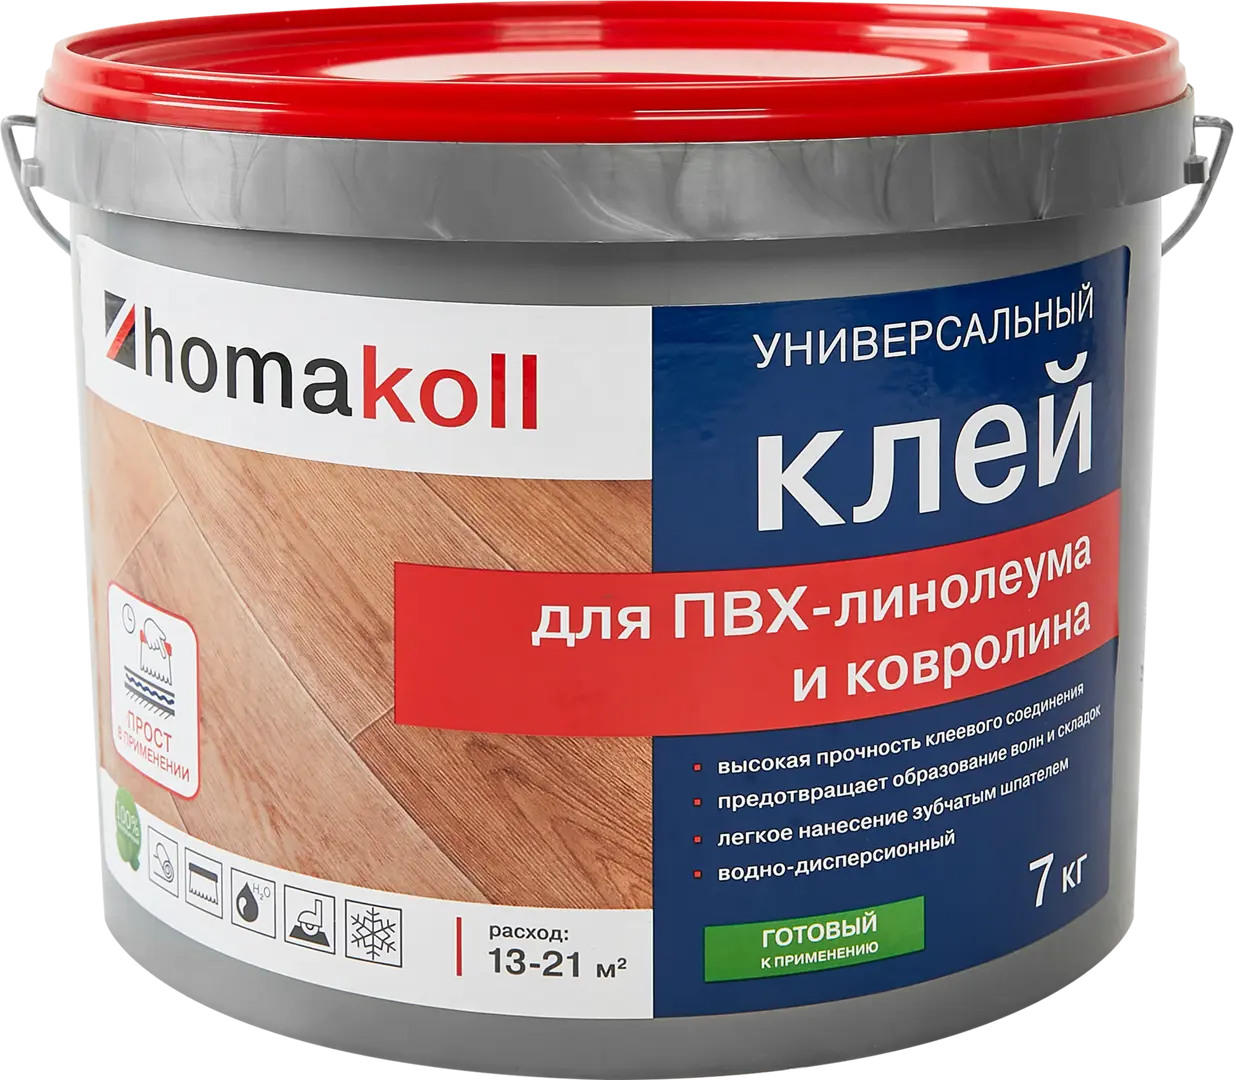 Клей универсальный для линолеума и ковролина Хомакол (Homakoll) 7 кг клей для полукоммерческого пвх линолеума homa homakoll 248 14 кг